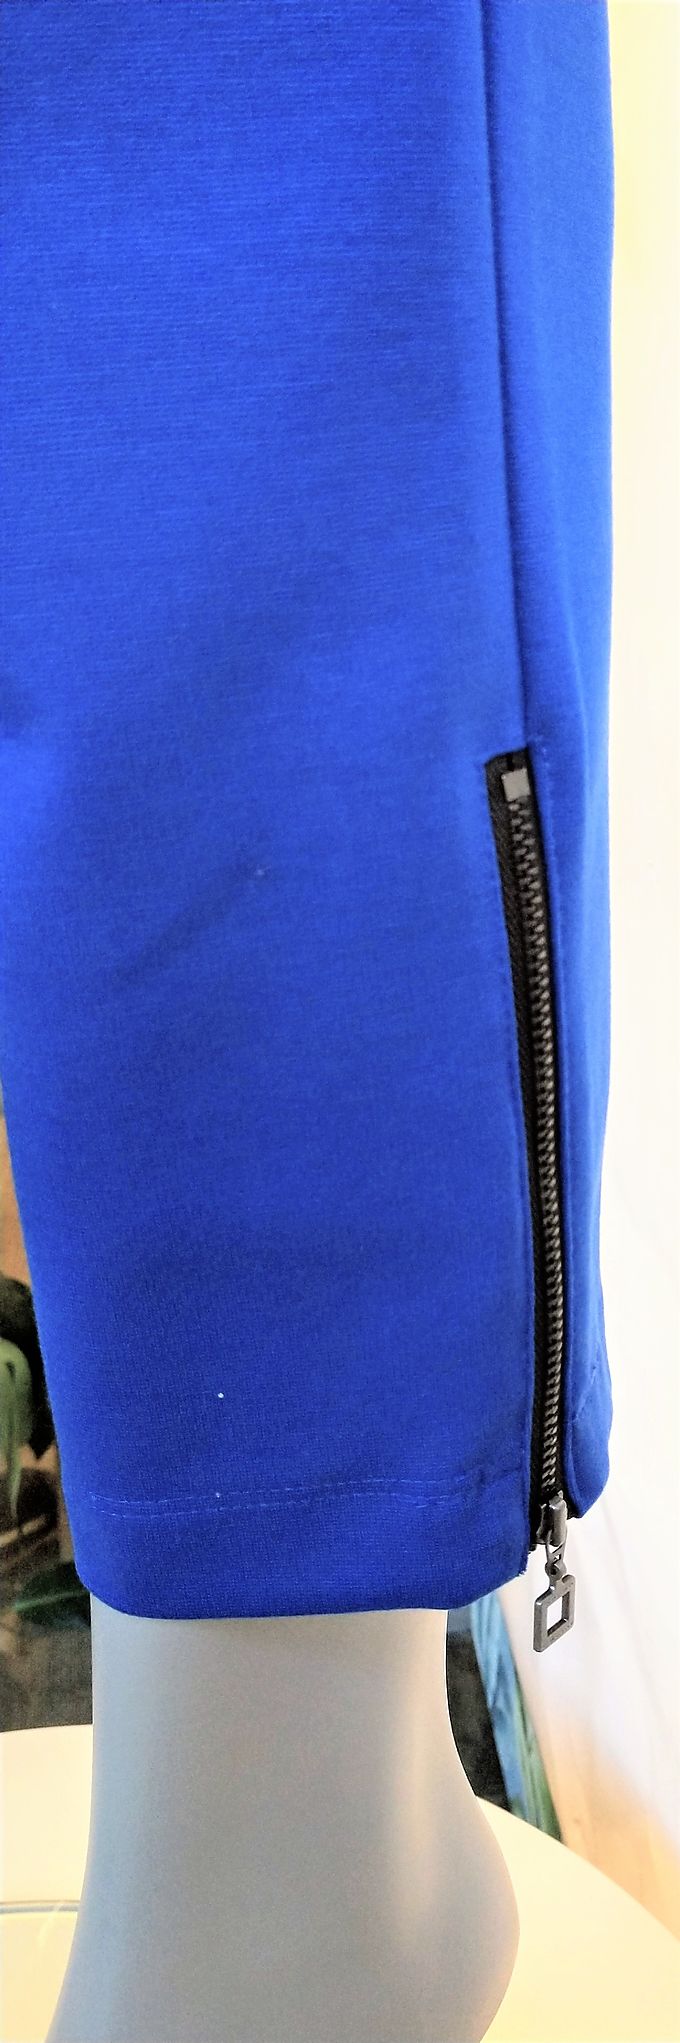 Pantalons Sarah Pacini bleu, zip